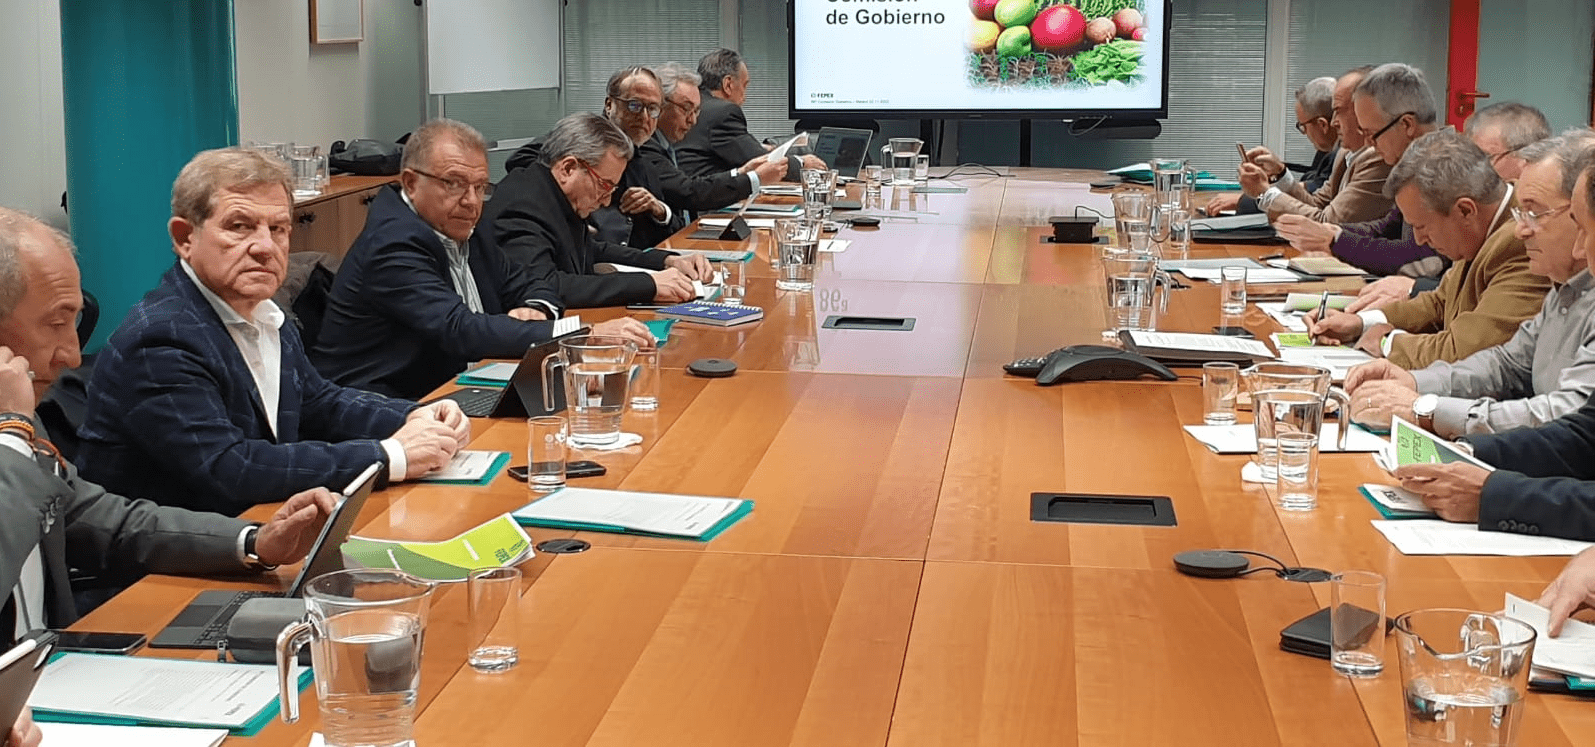 Proexport y FEPEX piden la revisión y una moratoria en la aplicación del nuevo marco normativo, desfavorable para el sector de frutas y hortalizas